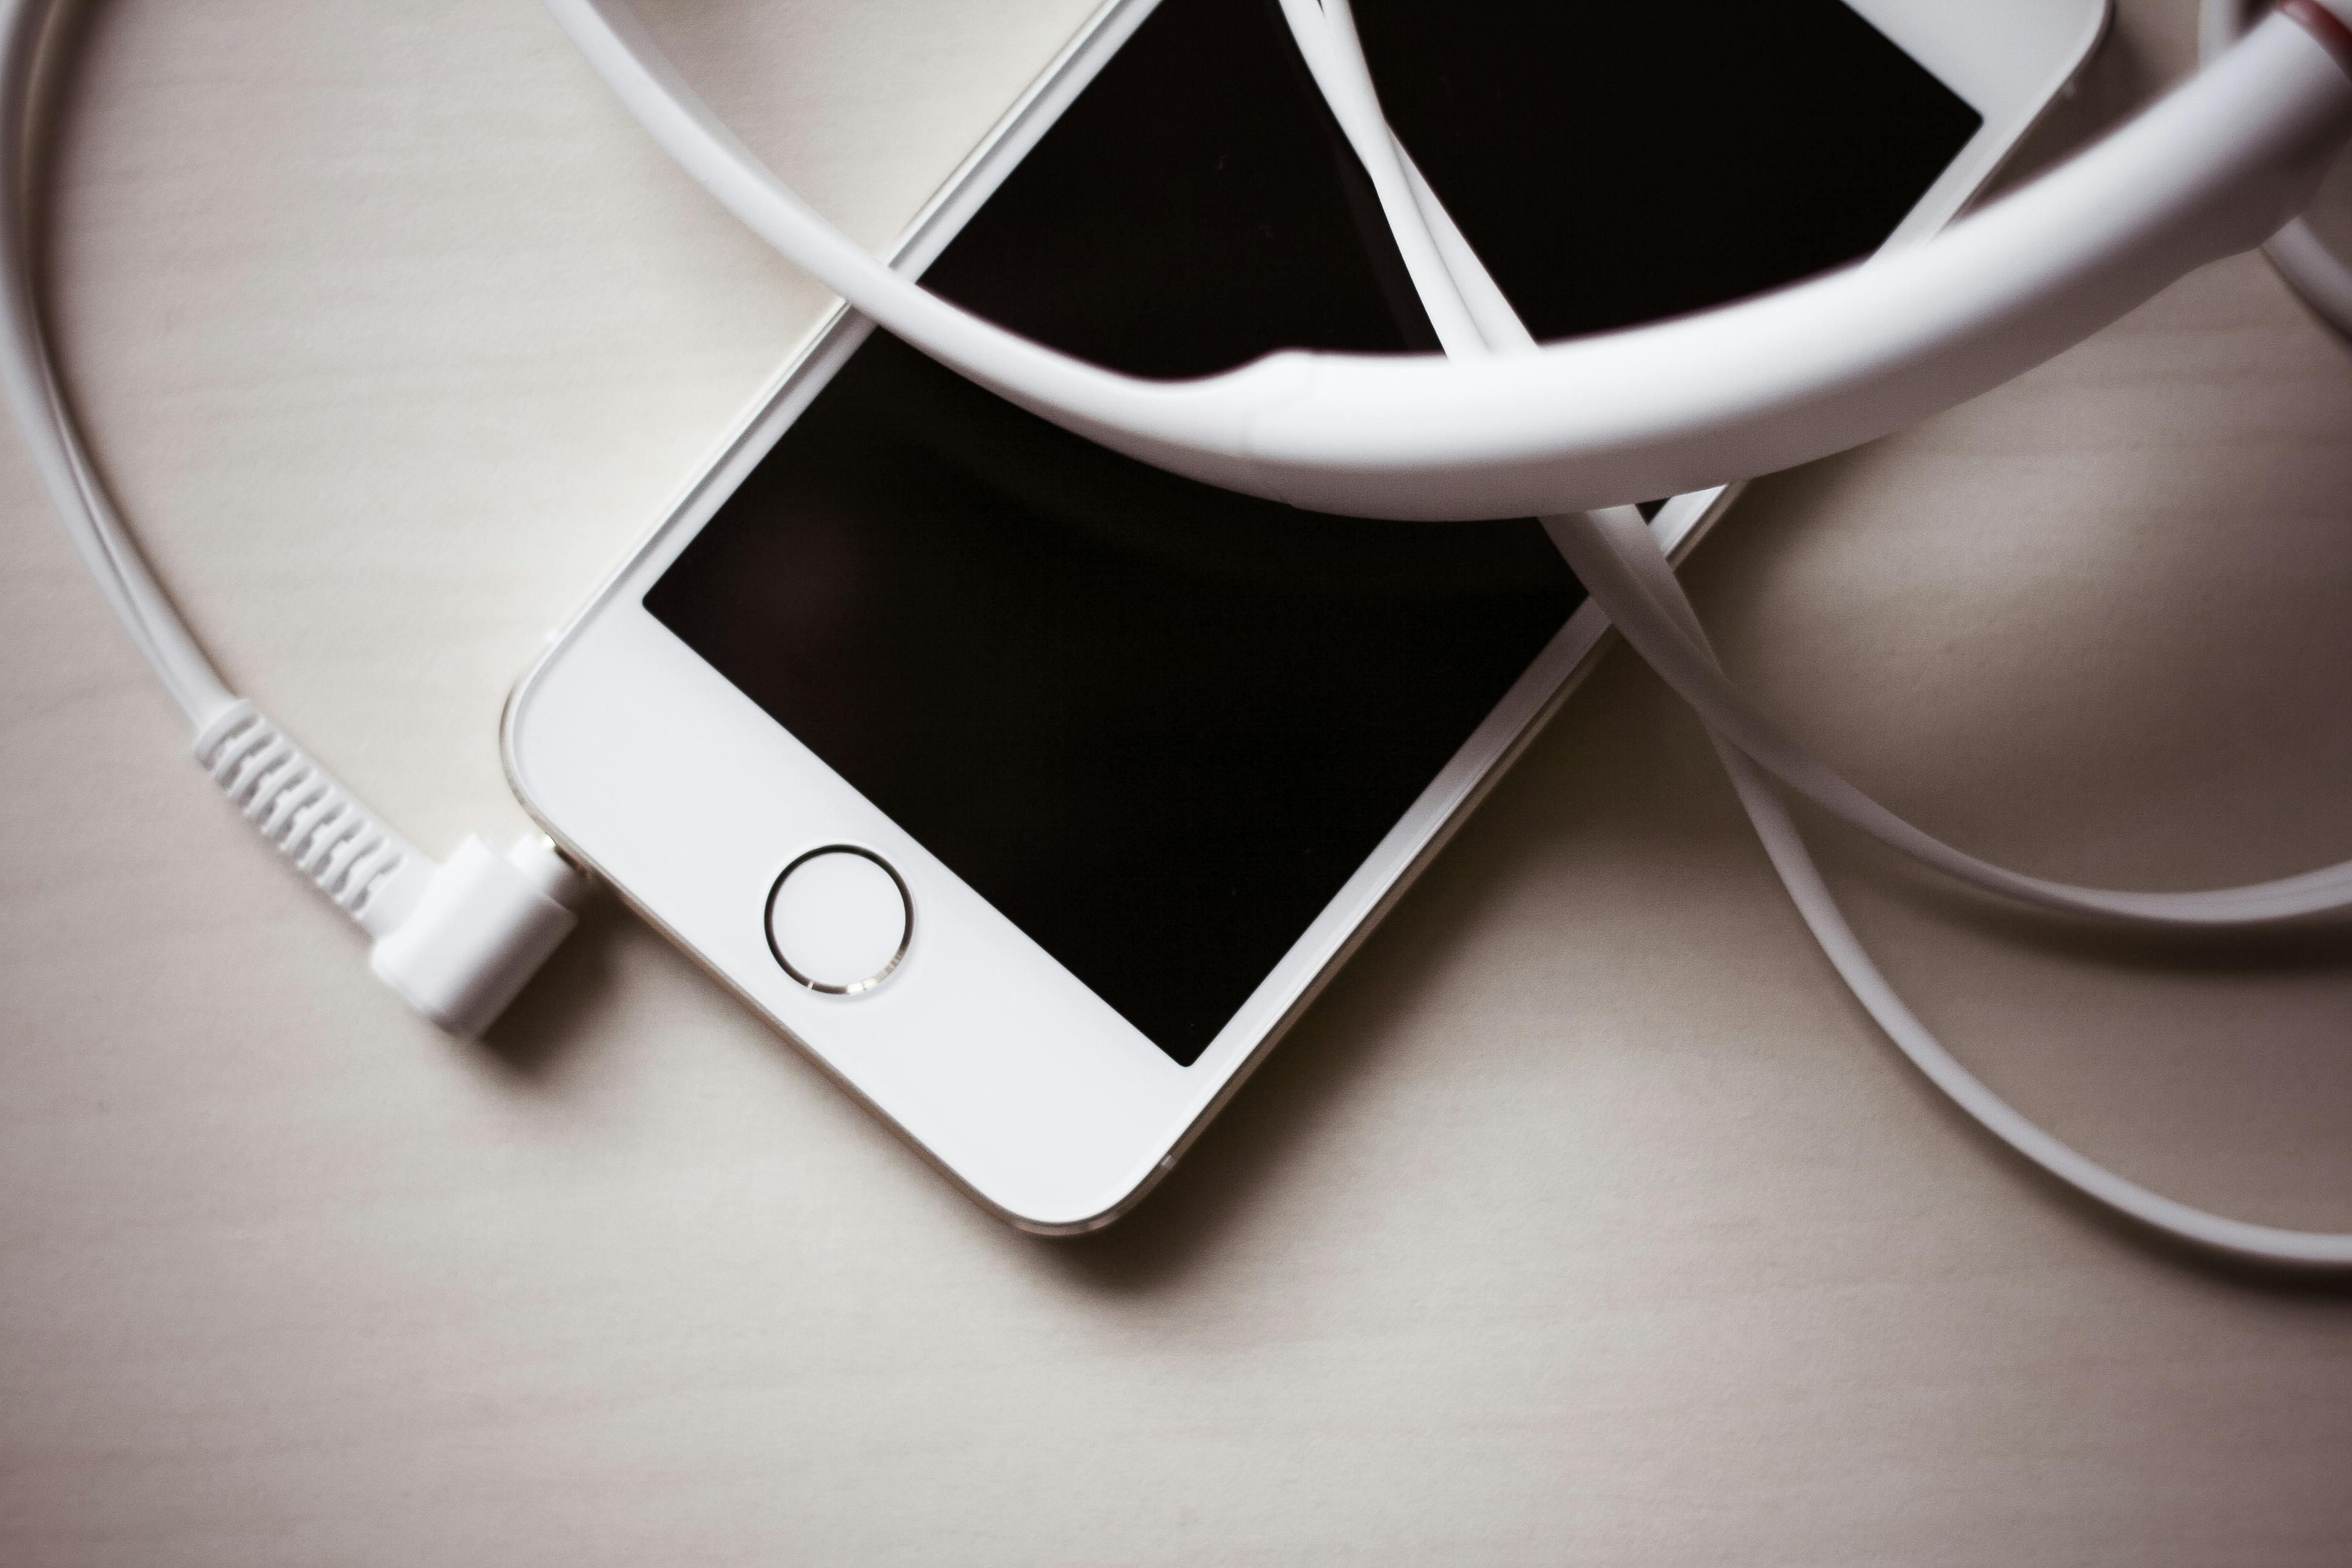 O iPhone 5s com botão home está em uma superfície, emaranhado em seu cabo de carregamento branco, exibindo uma tela preta indicando que está desligado ou em modo de espera.